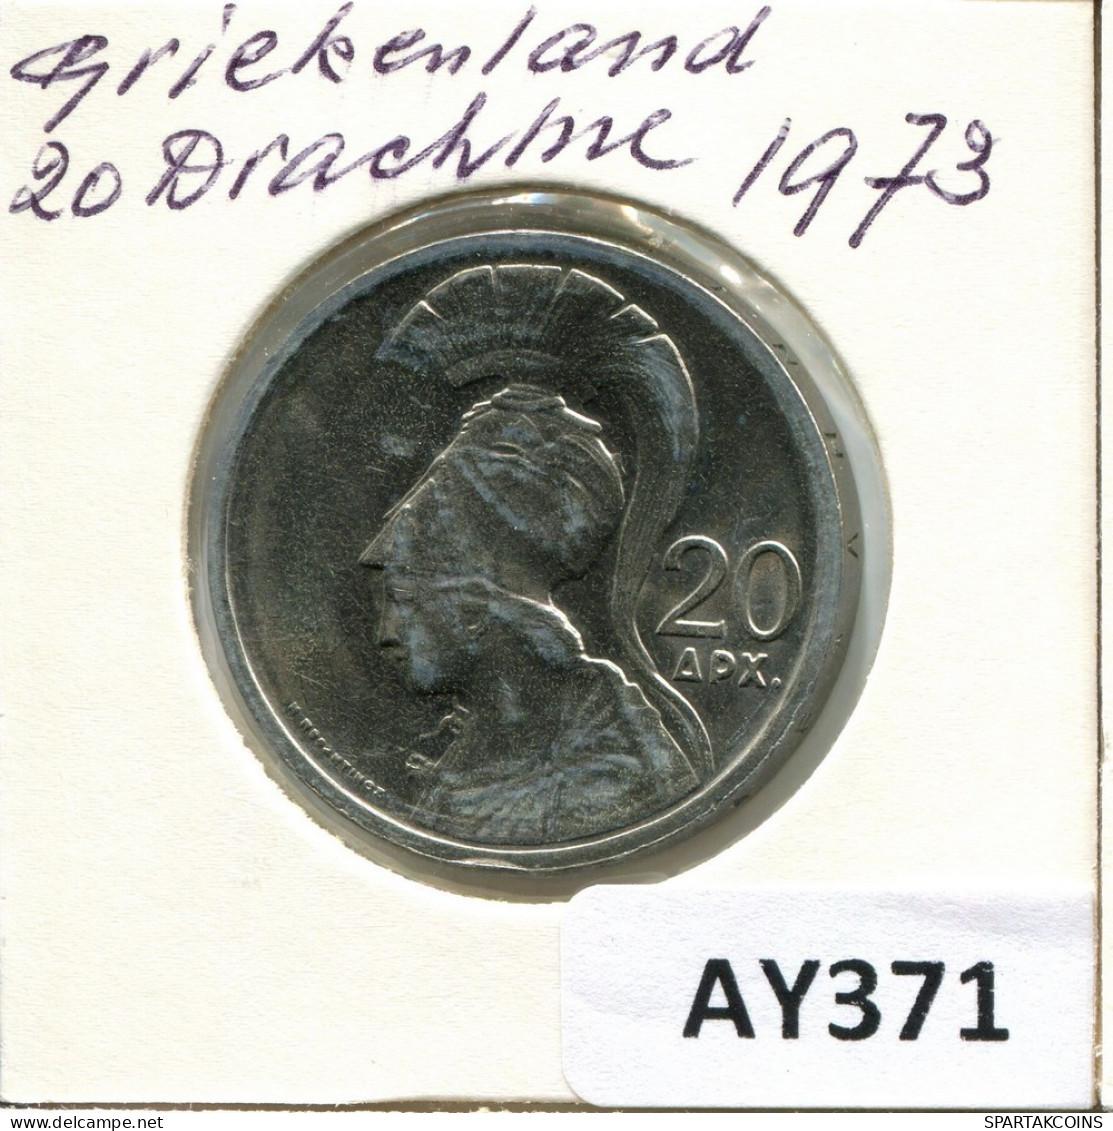 20 DRACHMES 1973 GRIECHENLAND GREECE Münze #AY371.D.A - Greece